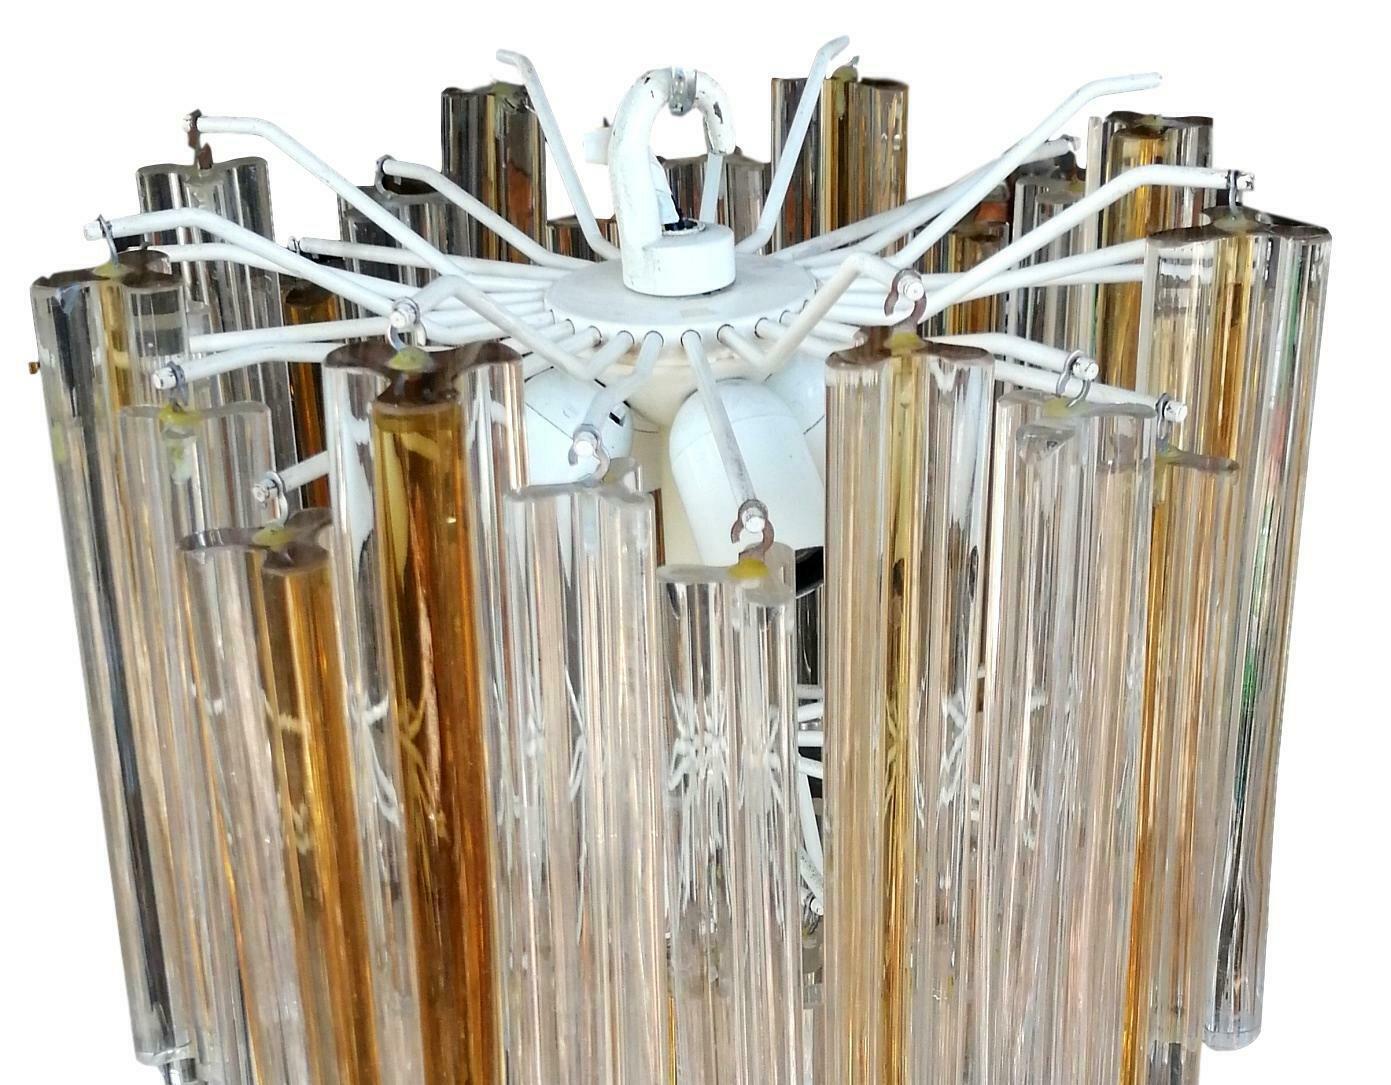 Splendide lustre original Venini des années 60, une cascade de verre trilobé aux tons mélangés d'ambre et de blanc disposés sur plusieurs niveaux, élégant, harmonieux, intemporel

hauteur totale un peu moins de 70 centimètres, soigneusement et